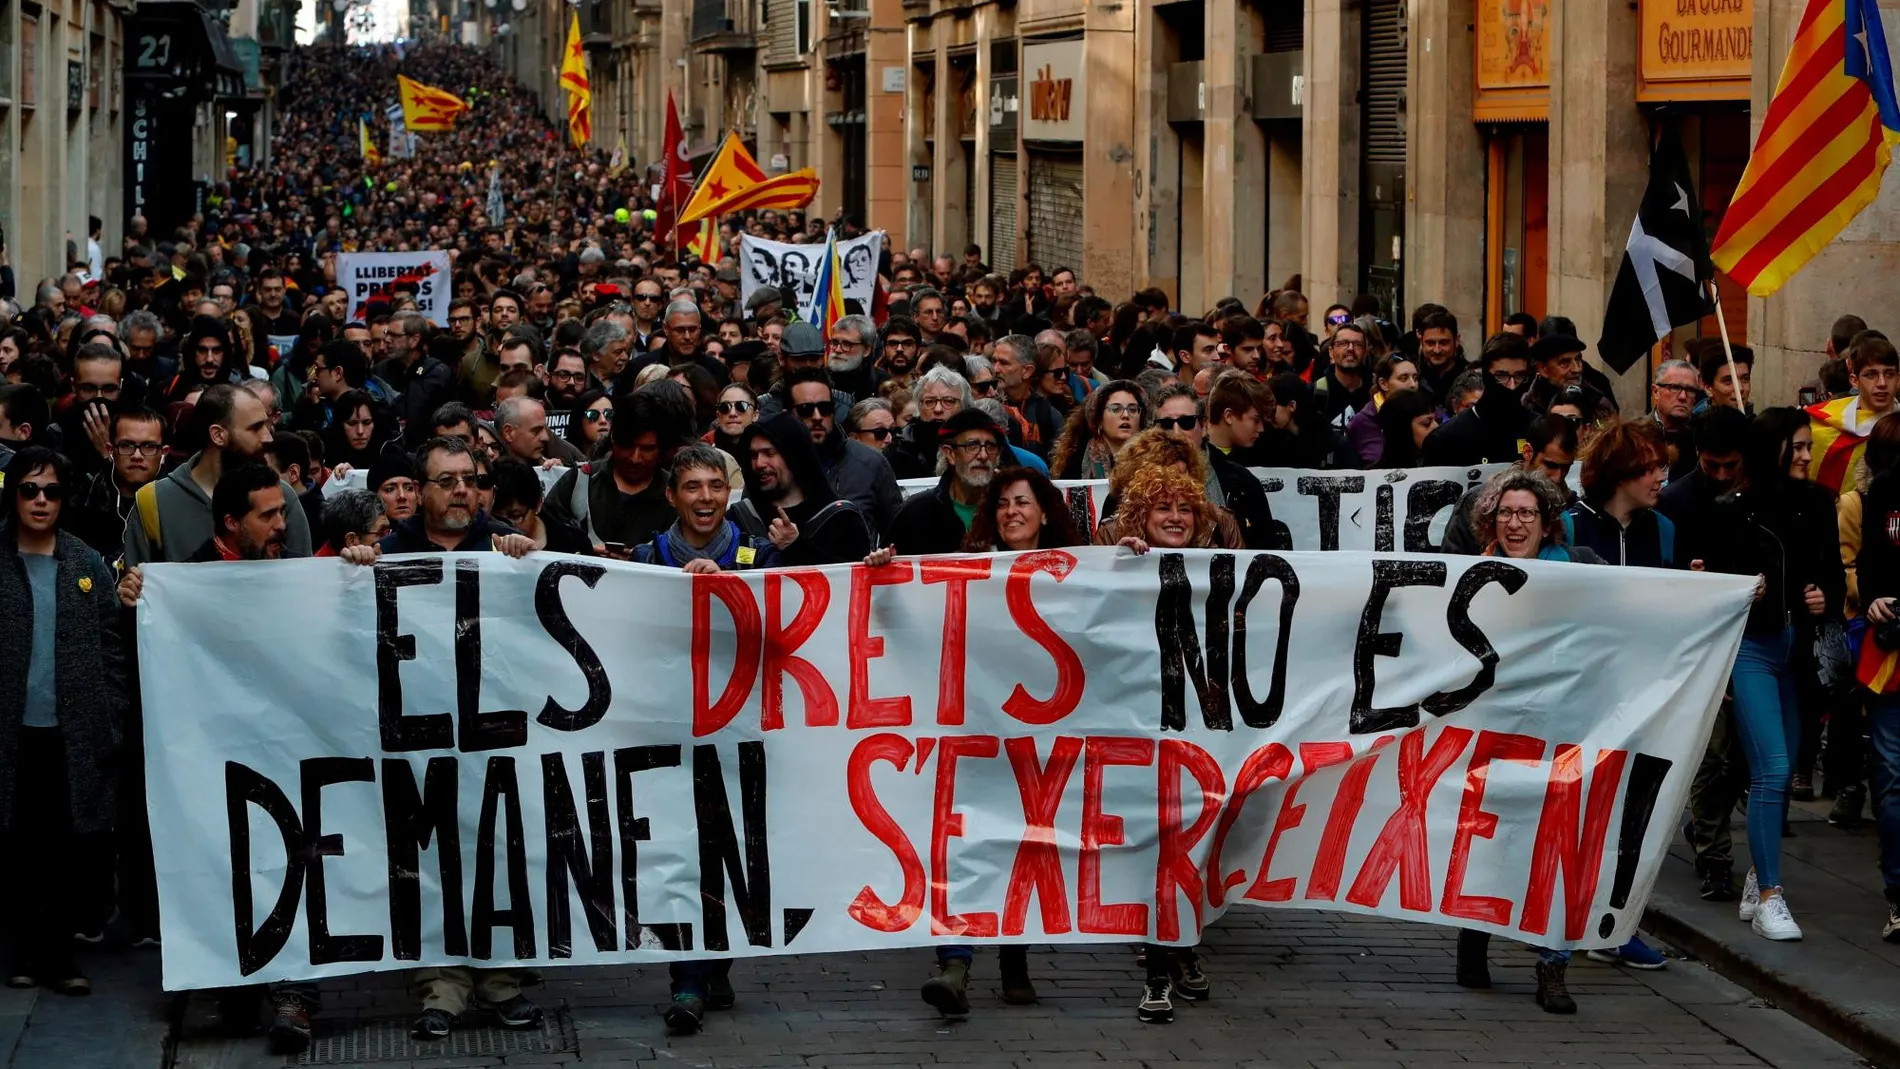 Miles de personas ocupan el centro de Barcelona (en la imagen, la calle Ferrán) en una concentración soberanista en apoyo a la jornada de la huelga general convocada por el sindicato independentista Intersindical-CSC para protestar por el juicio del 'procés'. EFE/Toni Albir